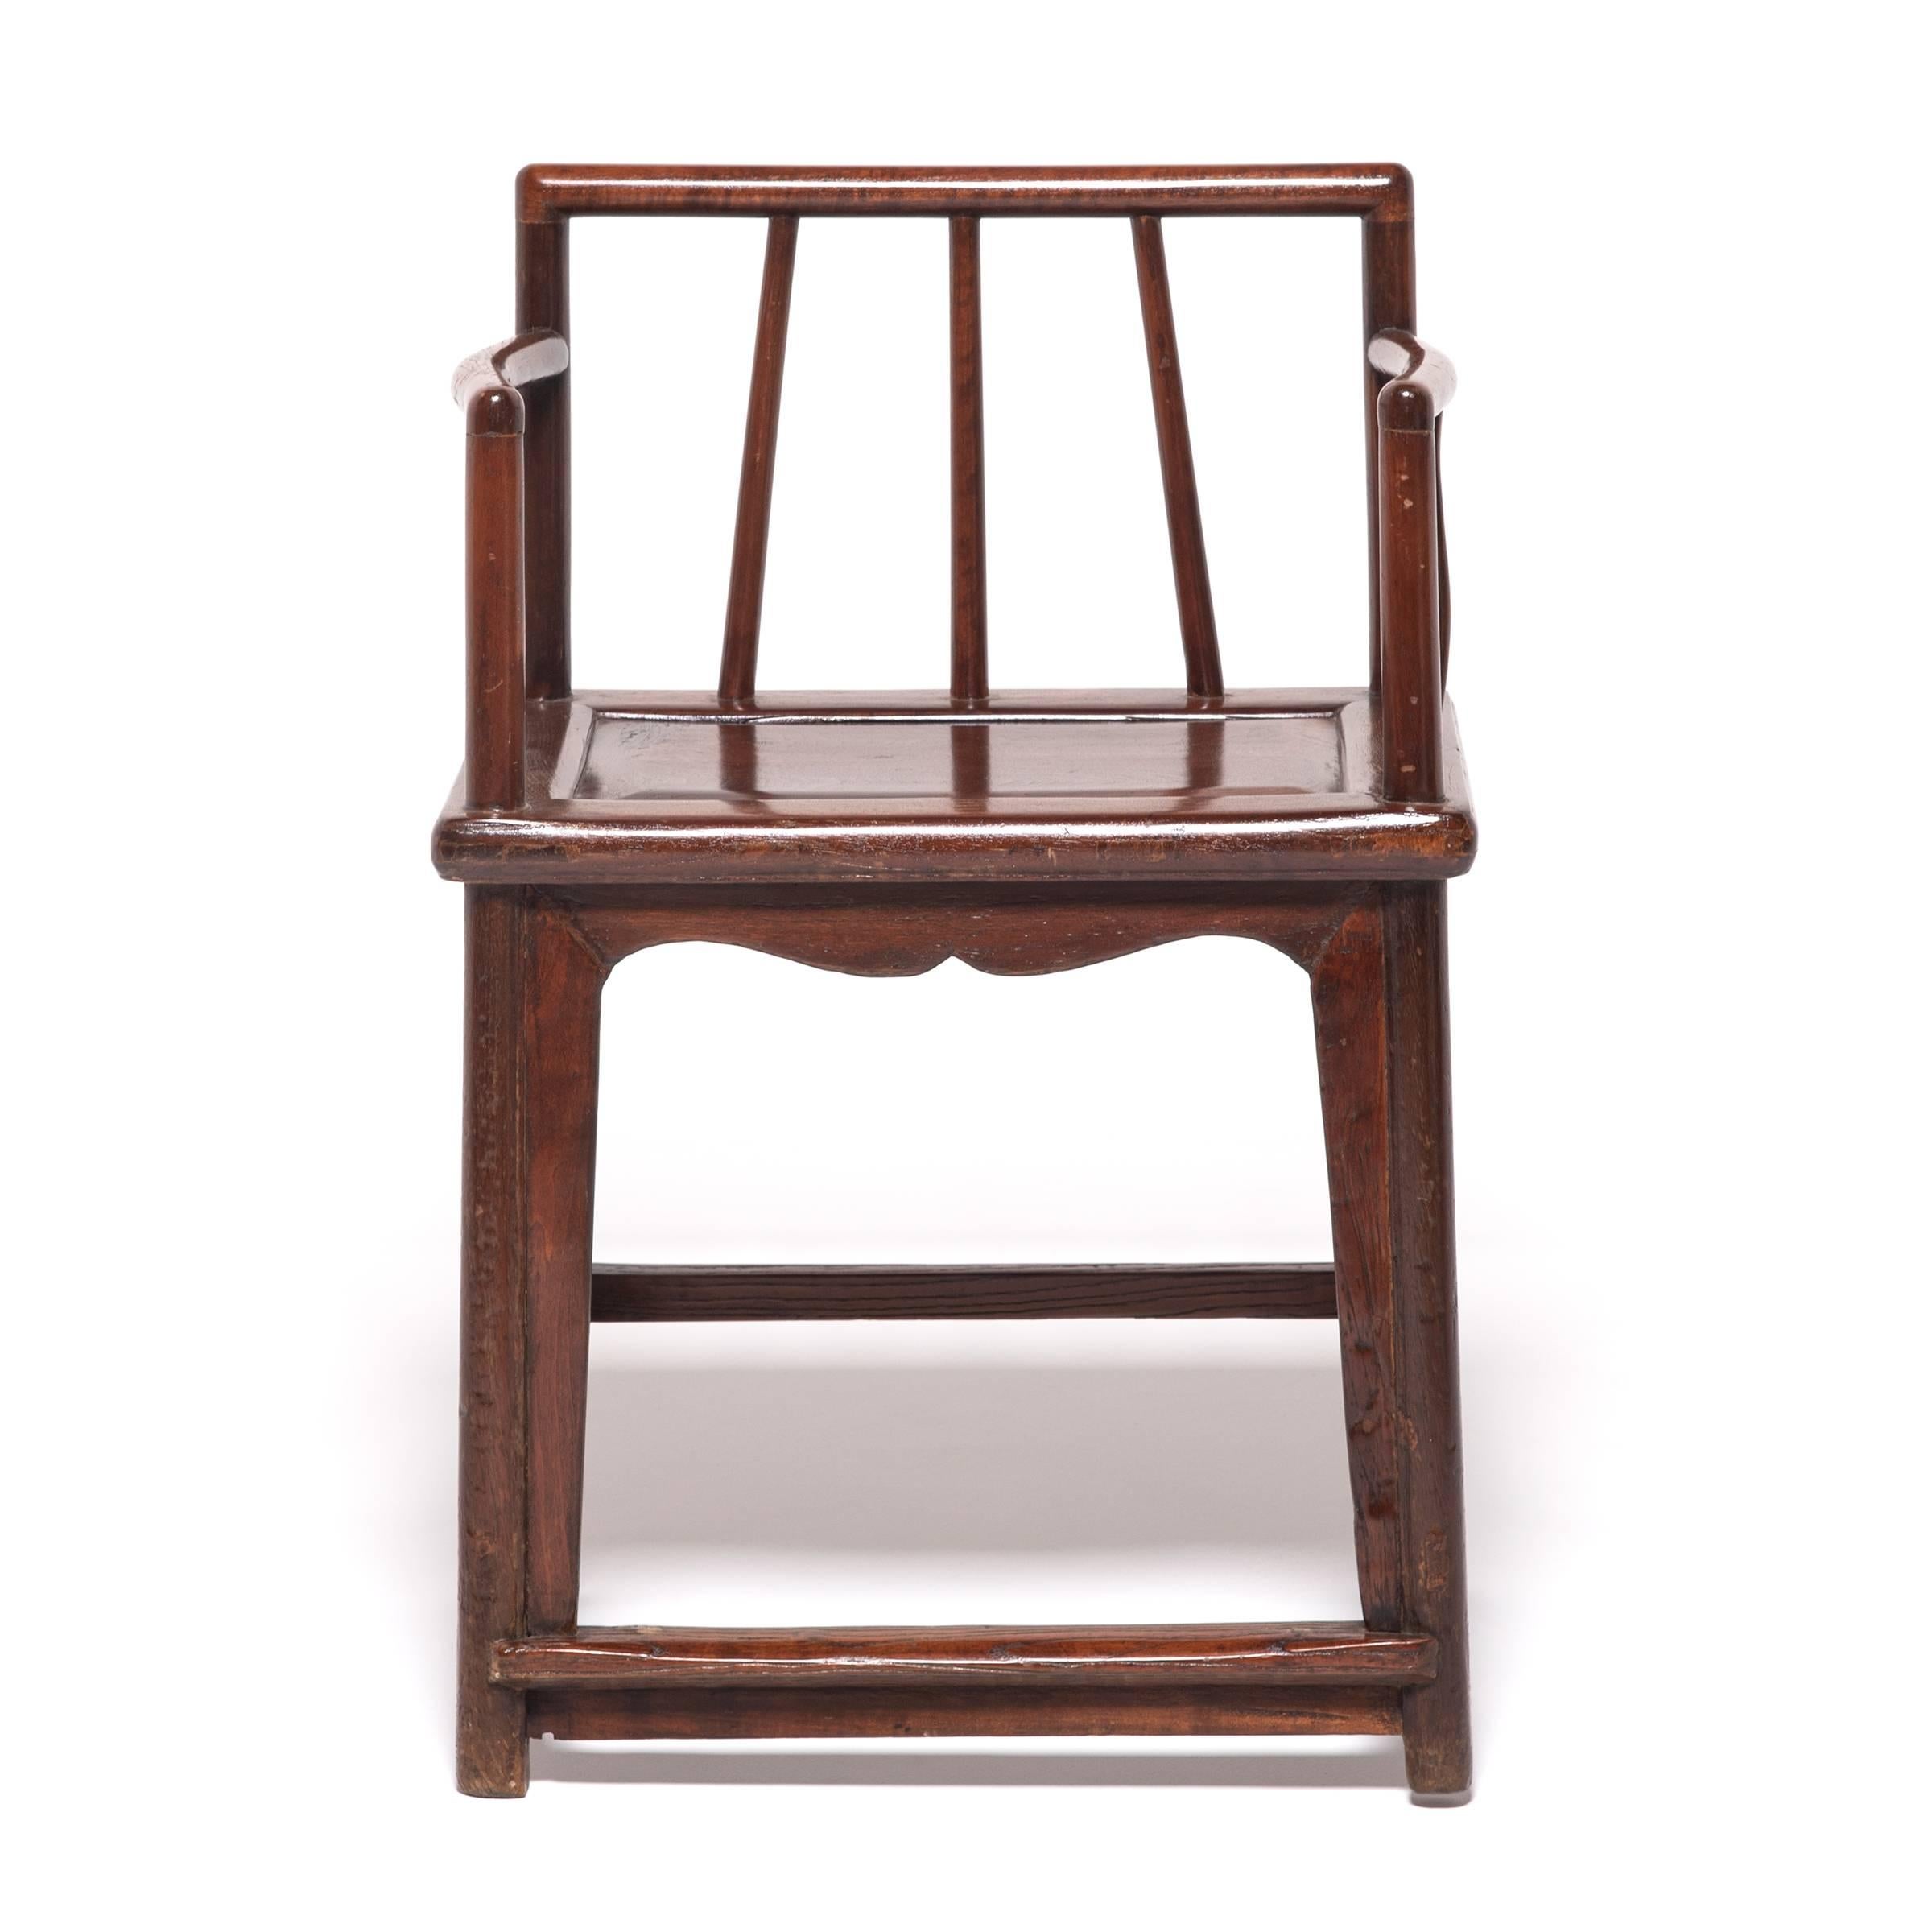 Diese Sessel mit Spindellehne aus dem 19. Jahrhundert verdanken ihr anmutiges Design den Stilen und Techniken, die während der Ming-Dynastie, dem goldenen Zeitalter des chinesischen Möbeldesigns, entwickelt wurden. Diese Stühle aus Nussbaumholz, die